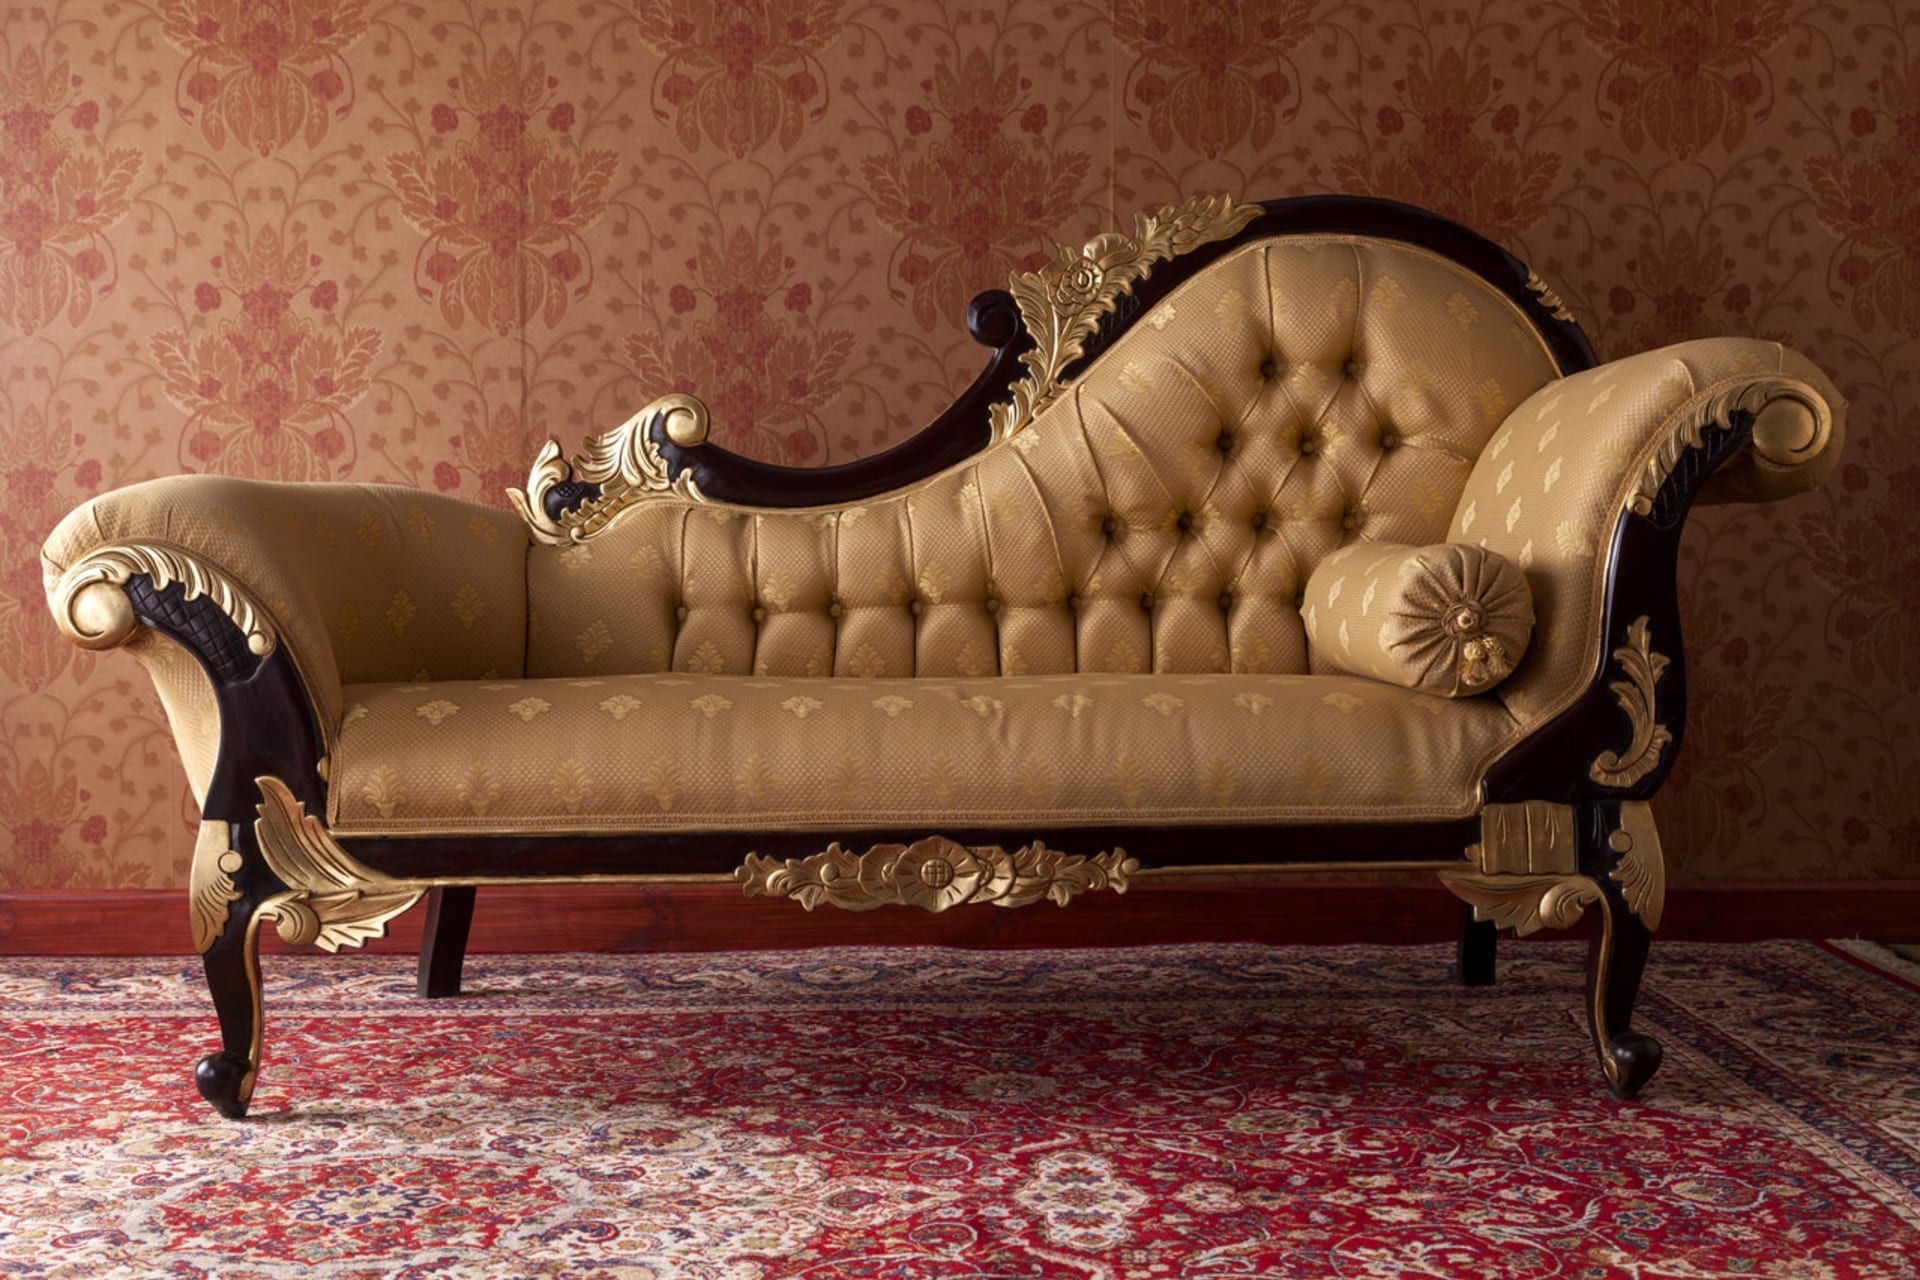 Francouzský styl bydlení: Objevte kouzlo chaise longue neboli dlouhé židle. Odpočívala na nich šlechta ve Versailles, můžete si na ní dát dvacet i vy.